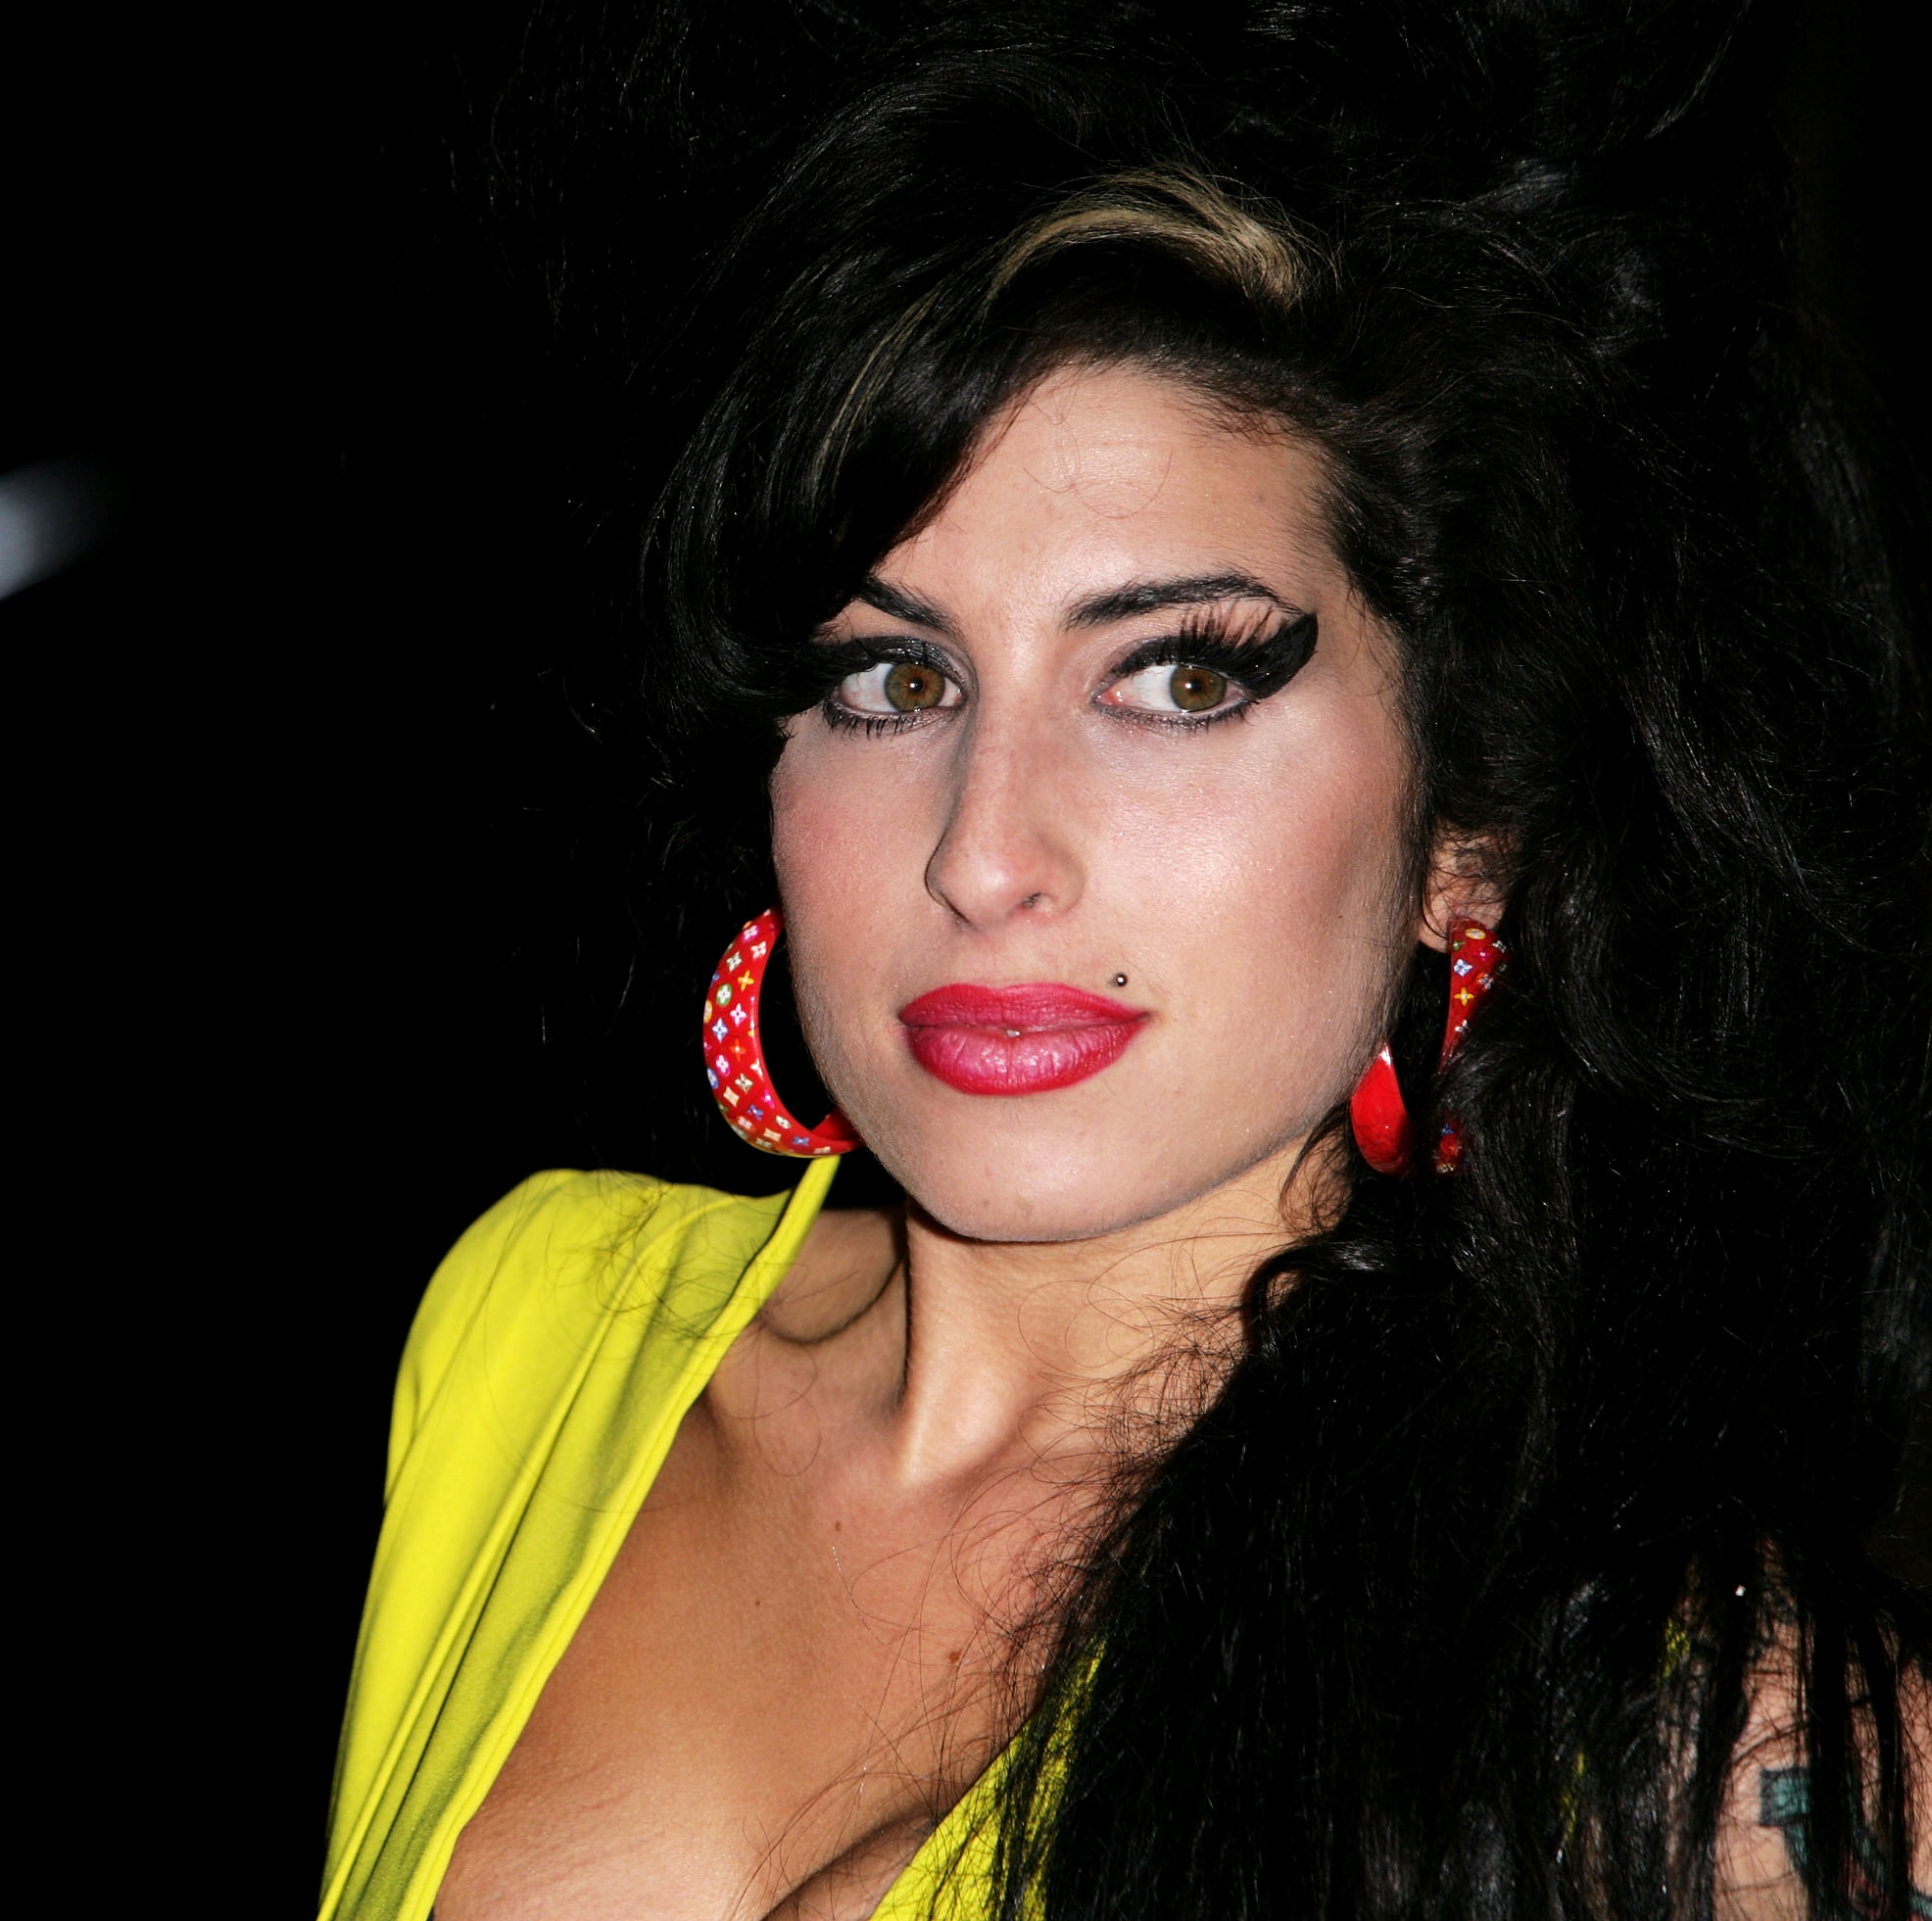 "Rehab" era Amy Winehouse wearing red earrings